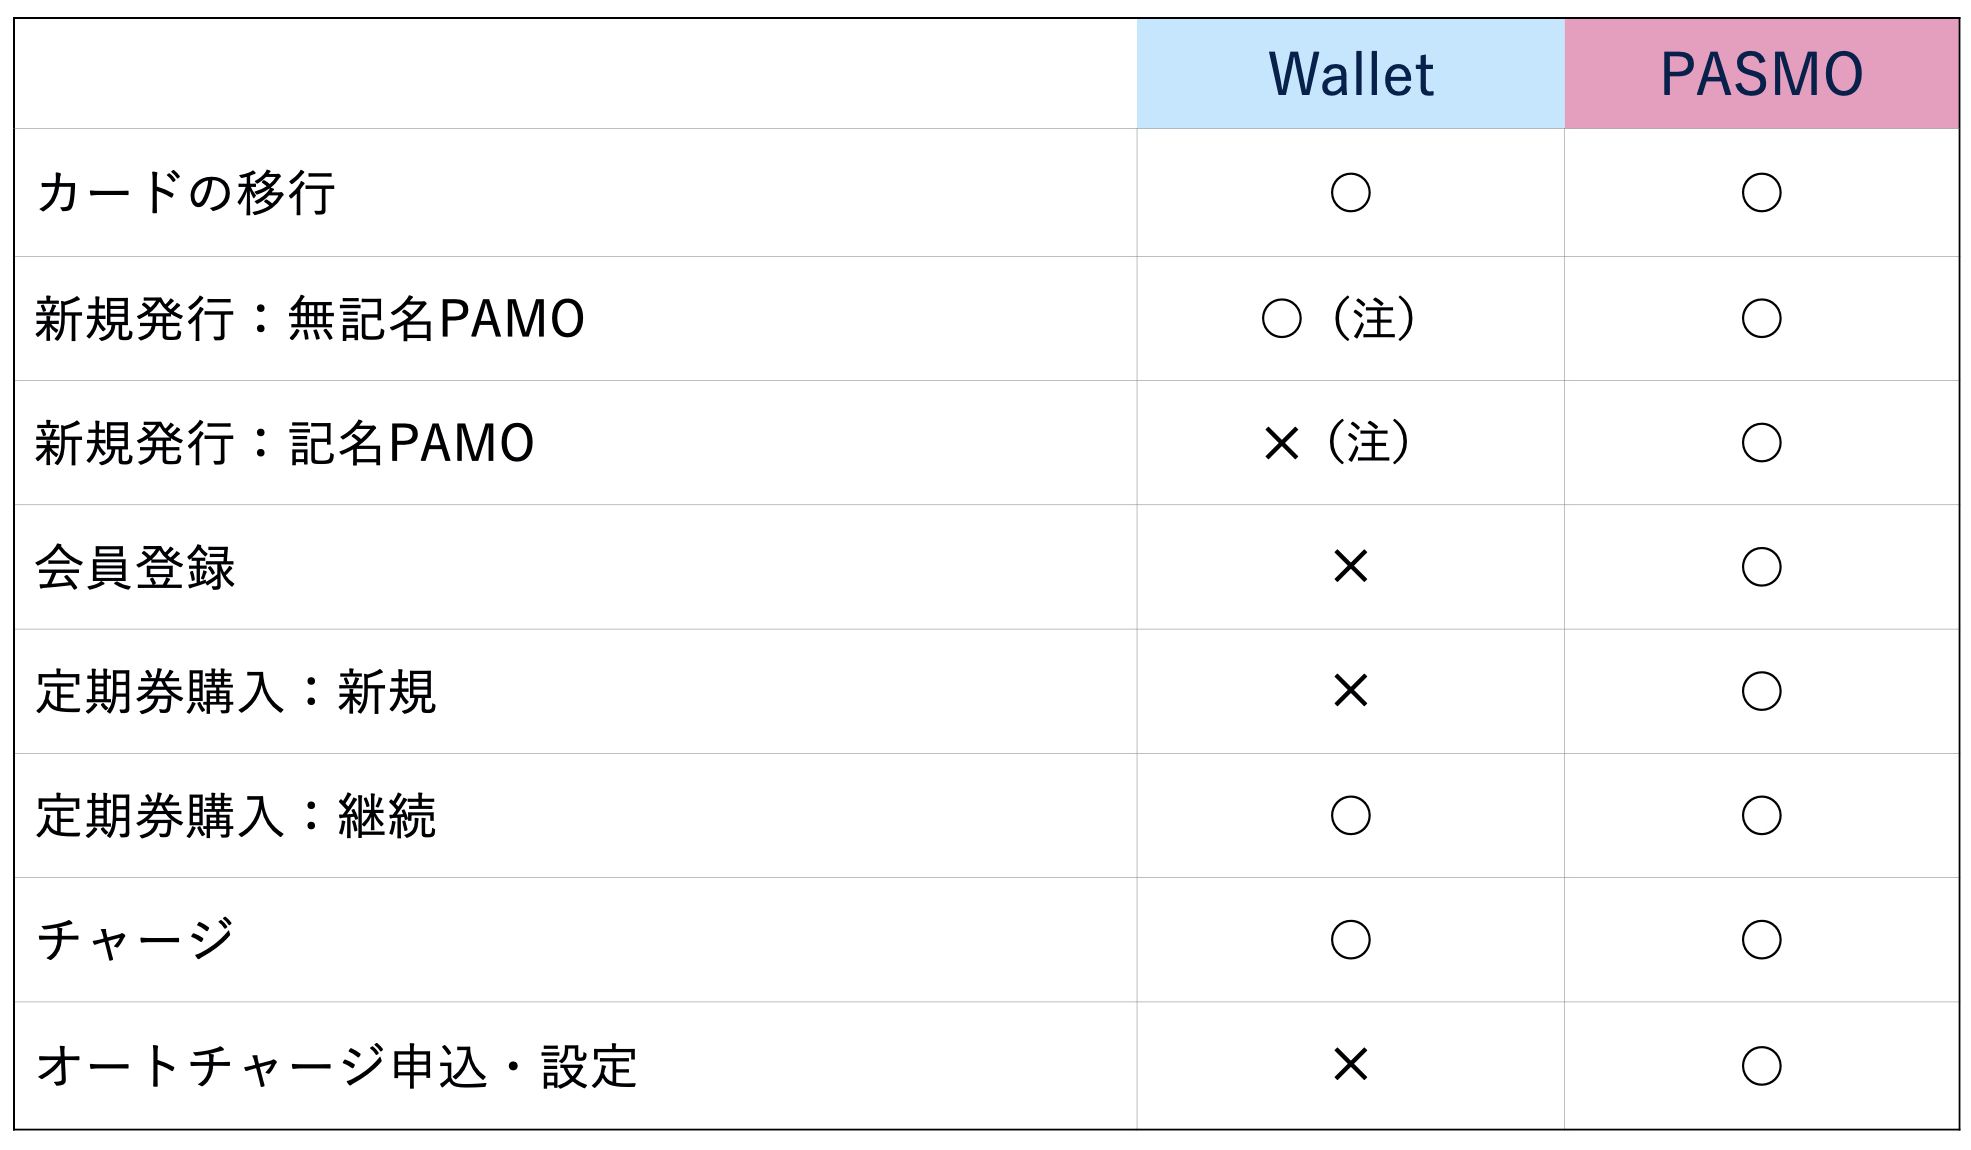 標準アプリ「Wallet」と「PASMO」アプリの主な違い